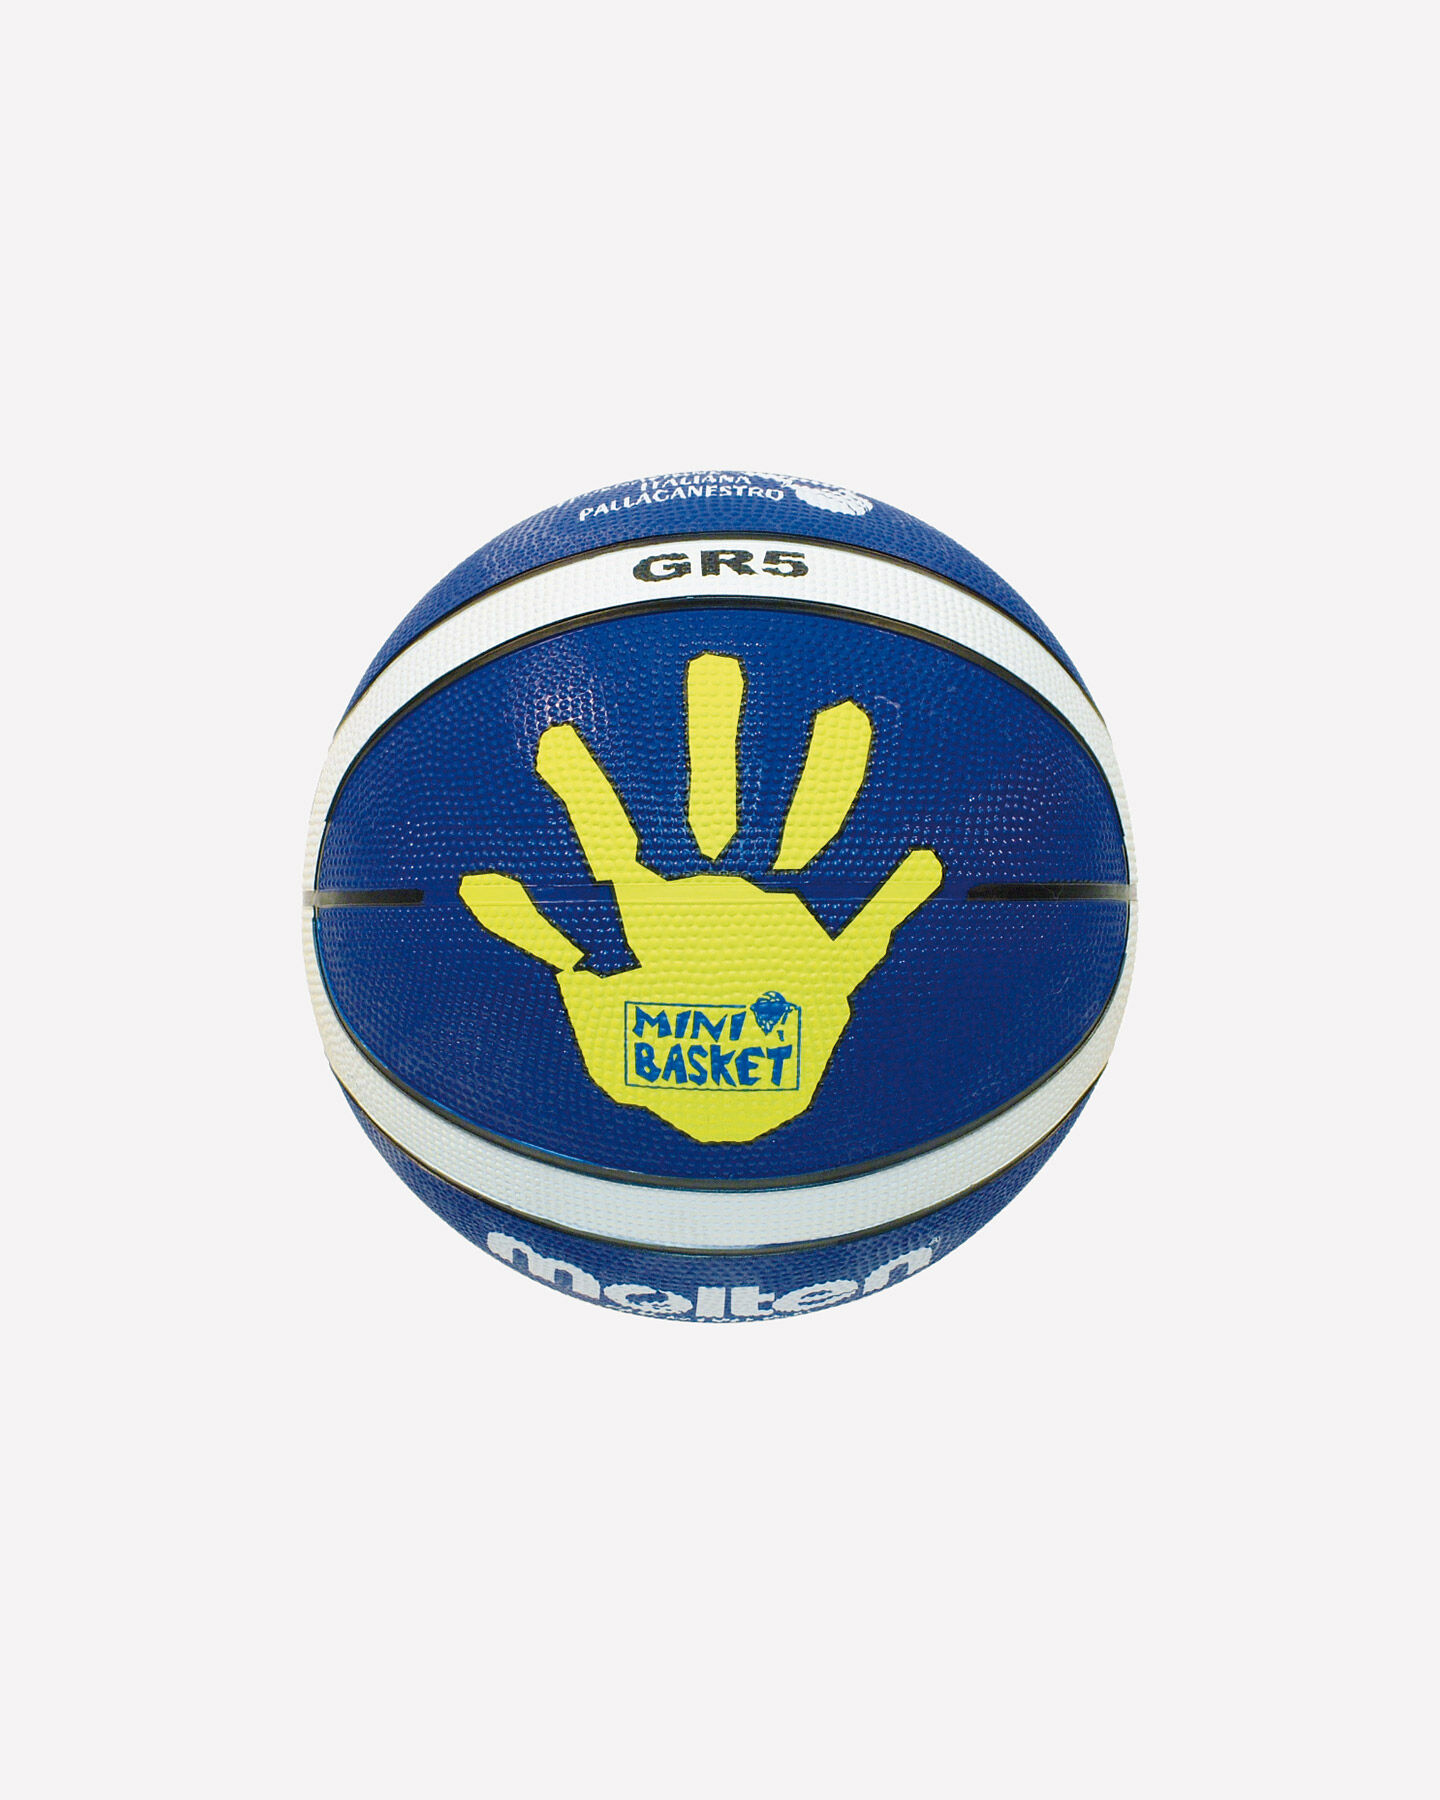  Pallone basket MOLTEN GR5 MIS.5 S0695416|1|UNI scatto 1